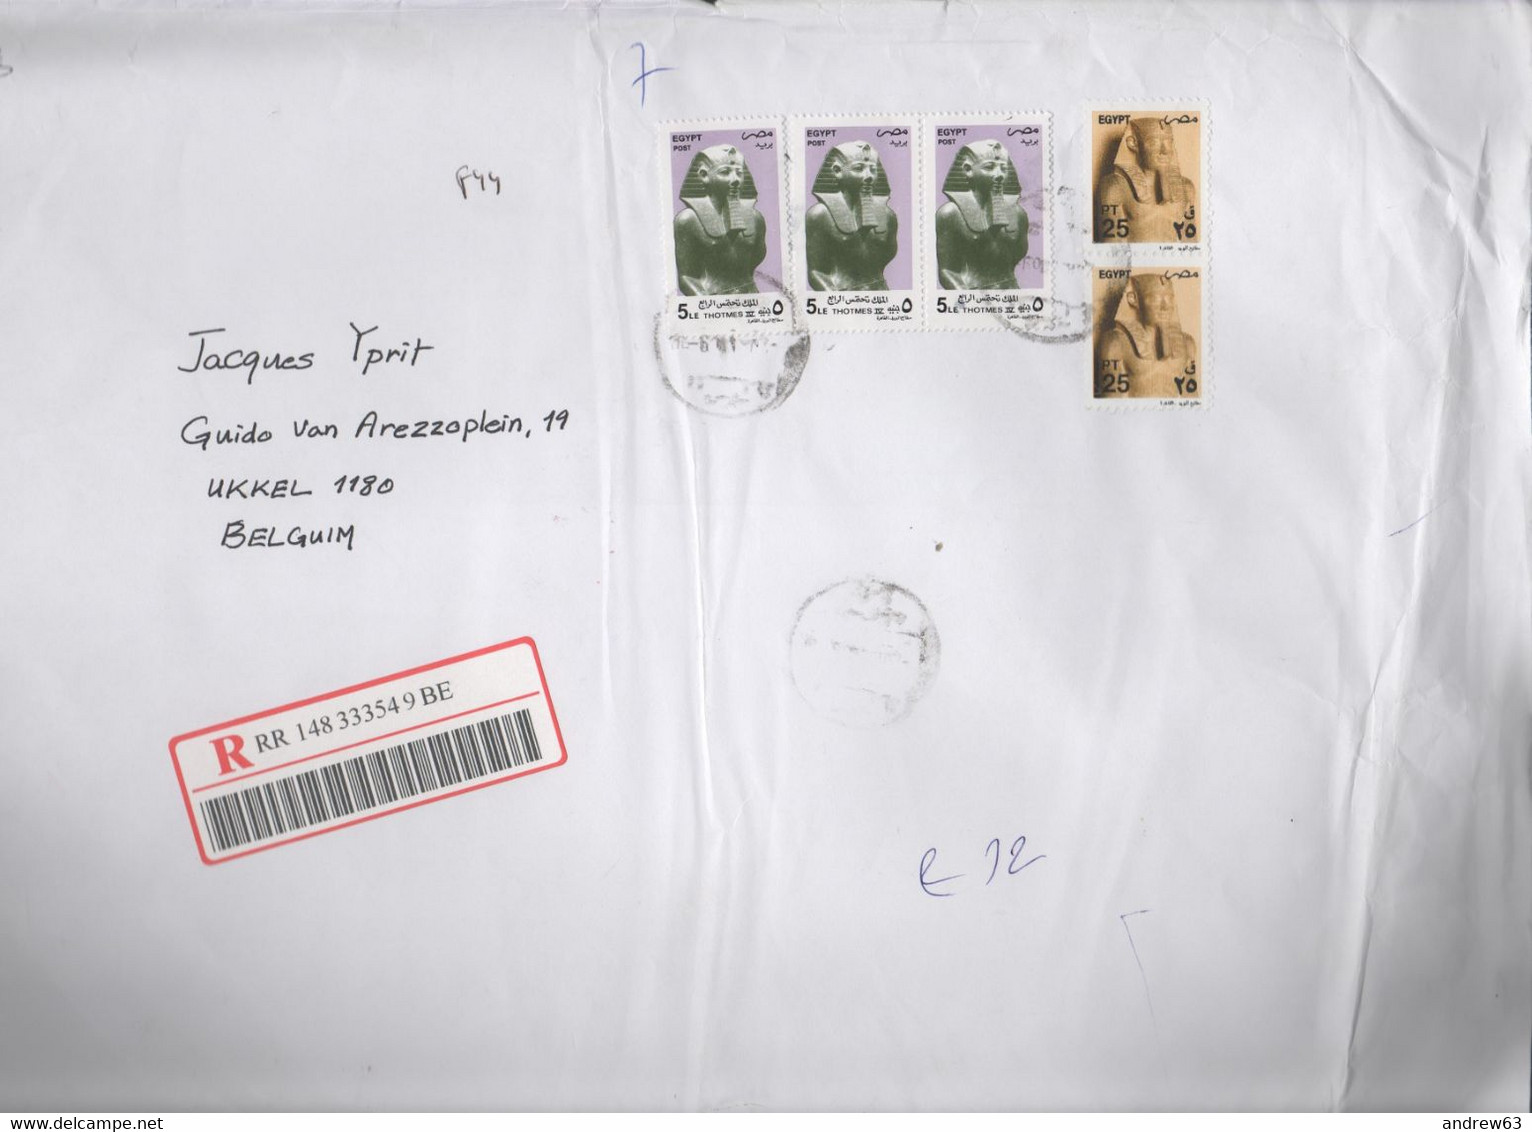 EGITTO - EGYPTE - Egypt - 2006 - 3 X 5 + 2 X 25 - Registered - Big Envelope -Viaggiata Da Alexandria Per Ukkel,Bruxelles - Storia Postale